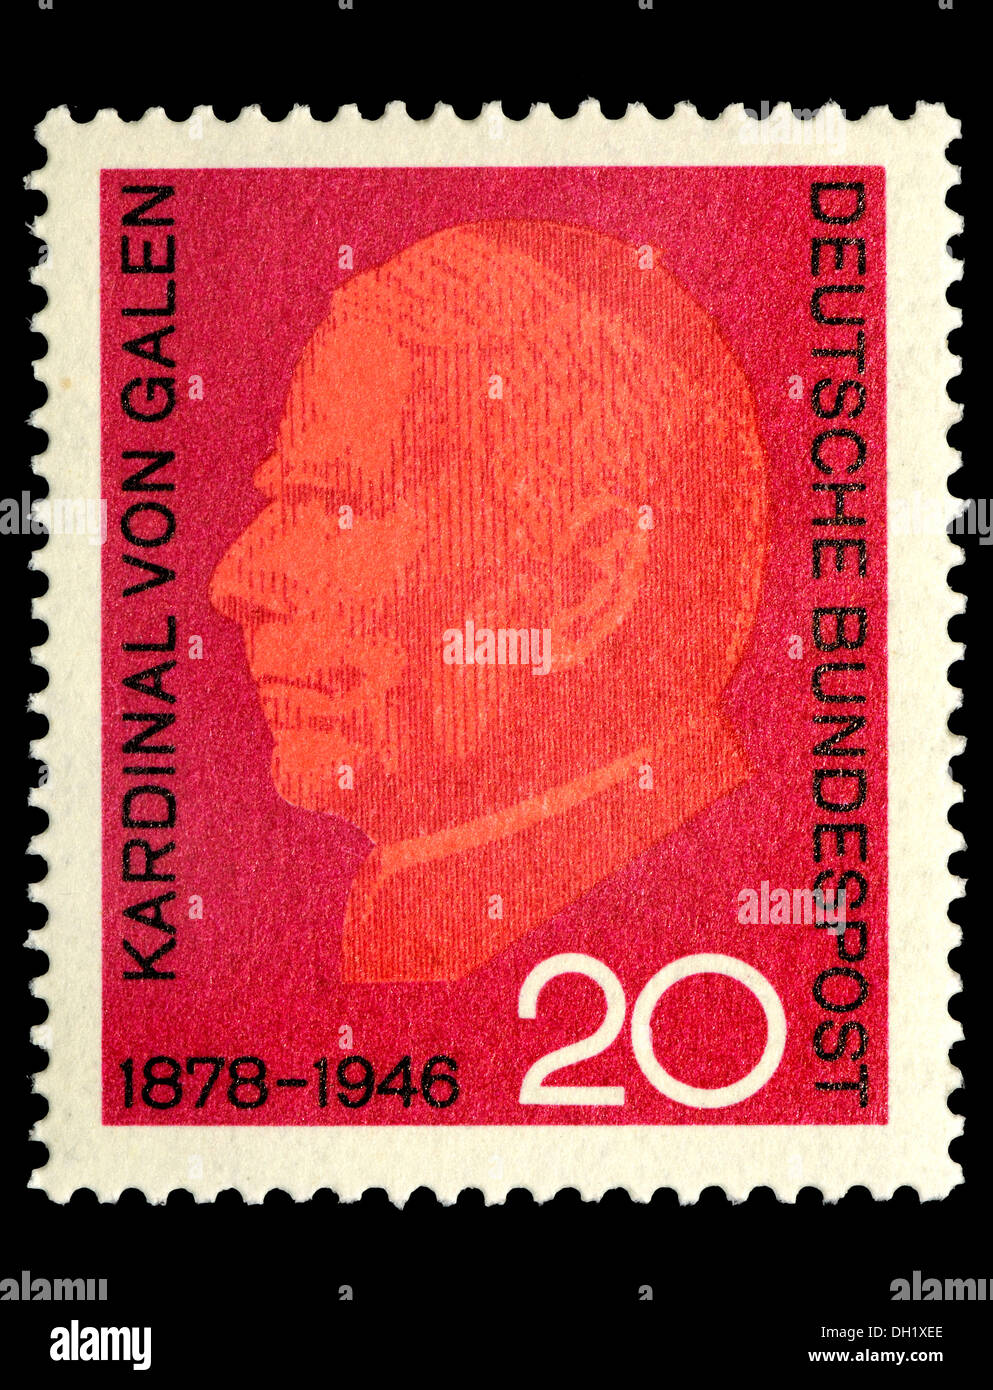 Portrait of Cardinal von Gallen (Clemens August Graf von Galen: 1878-1946 - Catholic bishop and Cardinal) on German stamp. Stock Photo